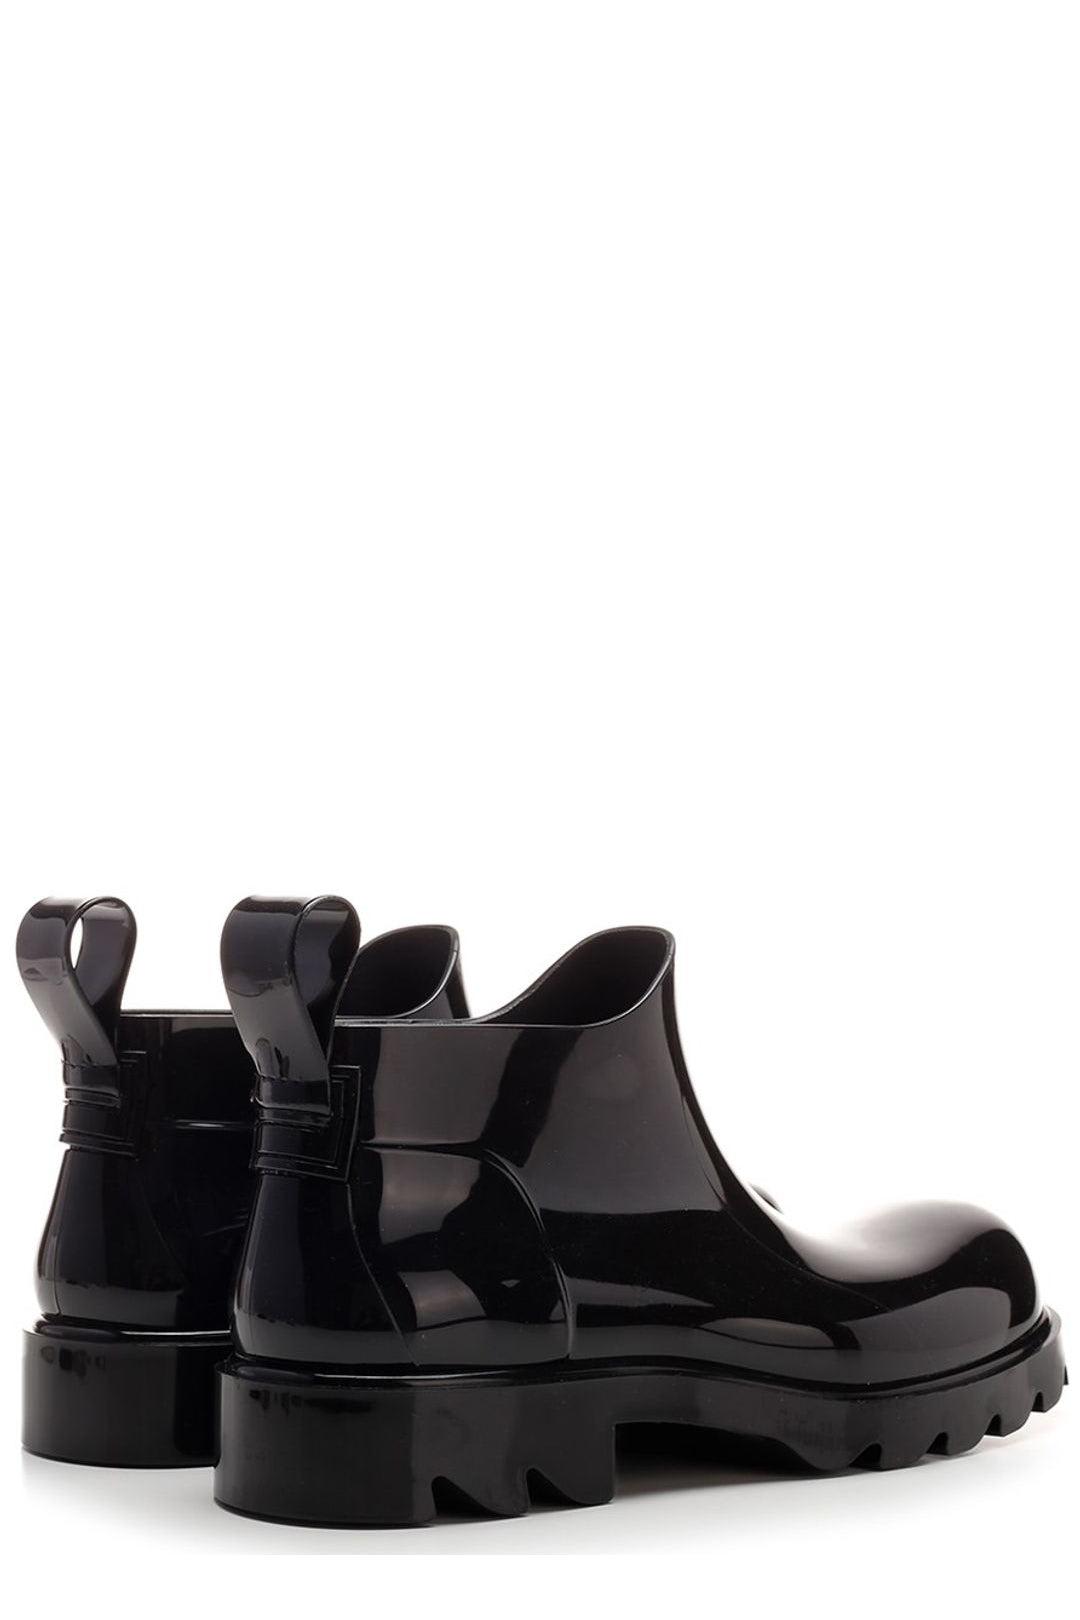 Shop Bottega Veneta Stride Ankle Boots In Black